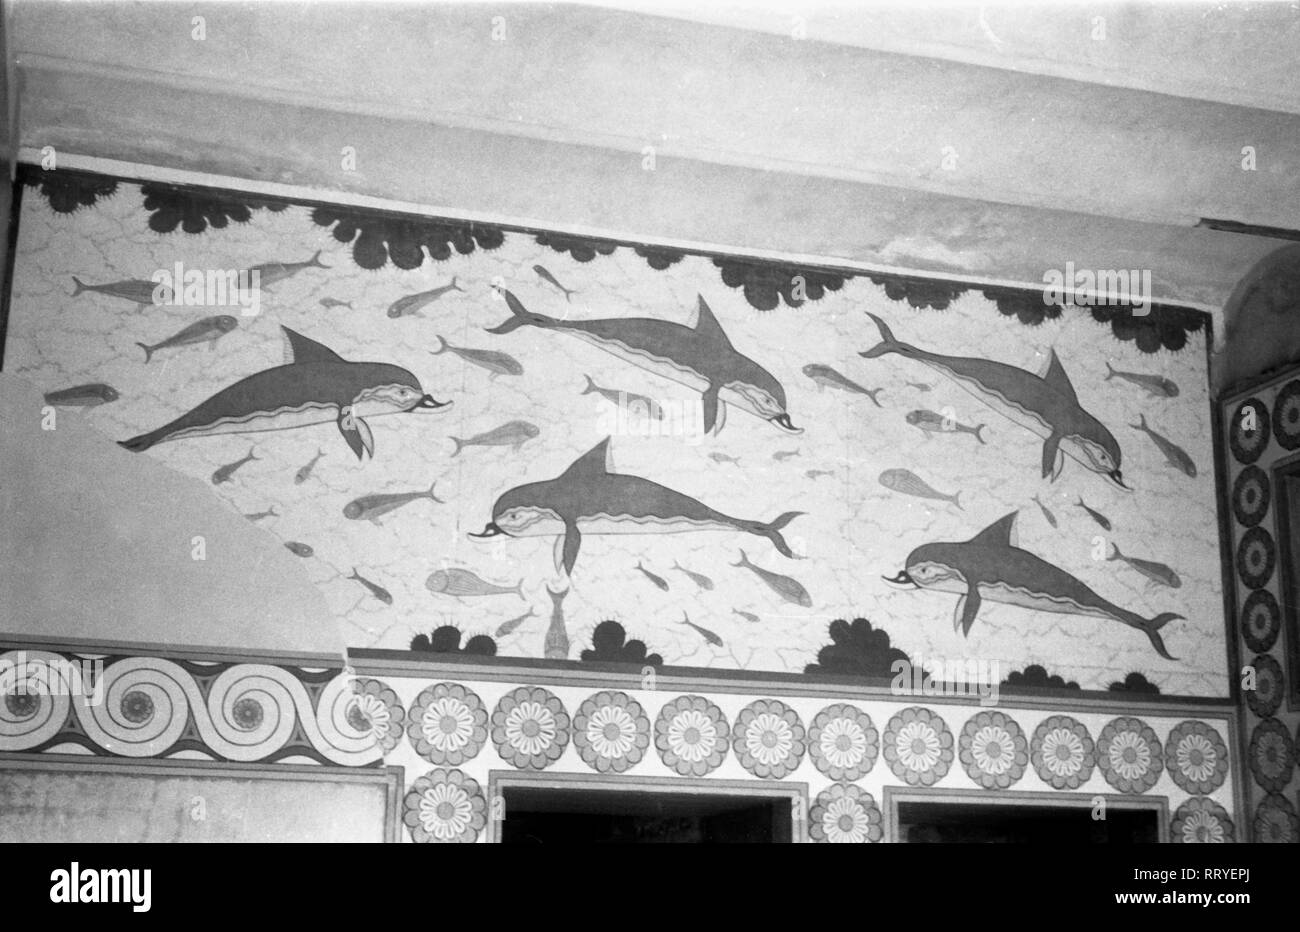 Spanien, Griechenland - Delphinfries aus dem Palast von Knossos auf Kreta, Griechenland, 1950er Jahre. Dolphin Fries An der Palast von Knossos auf Kreta, Griechenland, 1950. Stockfoto